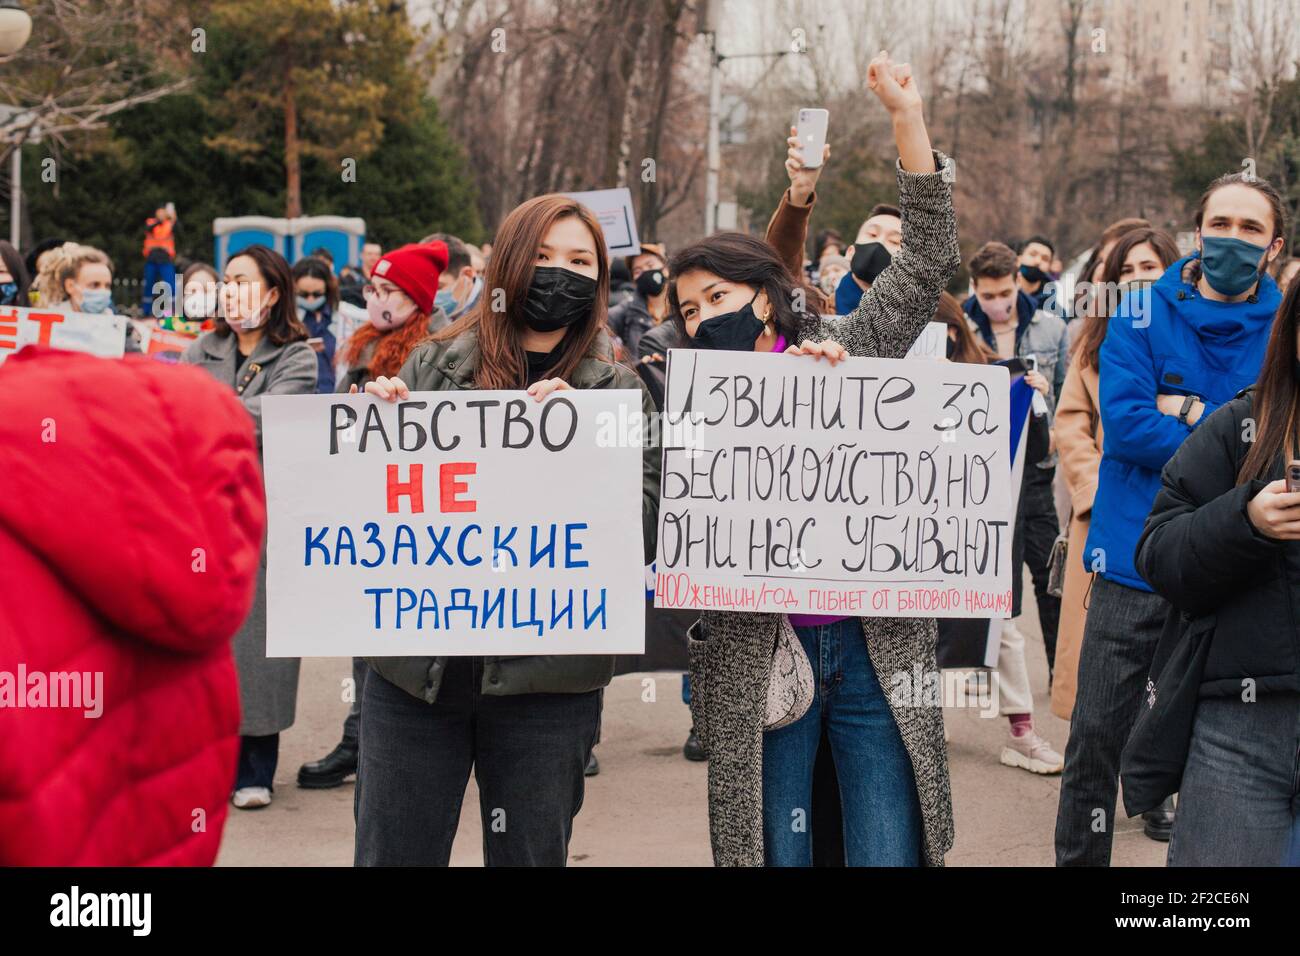 Si è tenuta una marcia e un raduno in difesa dei diritti delle donne nella giornata internazionale delle donne. Più di 800 persone hanno partecipato al rally. La marcia si è svolta su una delle strade principali della città e si è conclusa con un rally sulla piazza. Questa è la prima marcia femminista ufficiale del Kazakistan. la marcia è stata autorizzata dalle autorità locali. I manifestanti hanno voluto parità retributiva e sanzioni penali per le molestie. Almaty, Kazakistan. Foto Stock